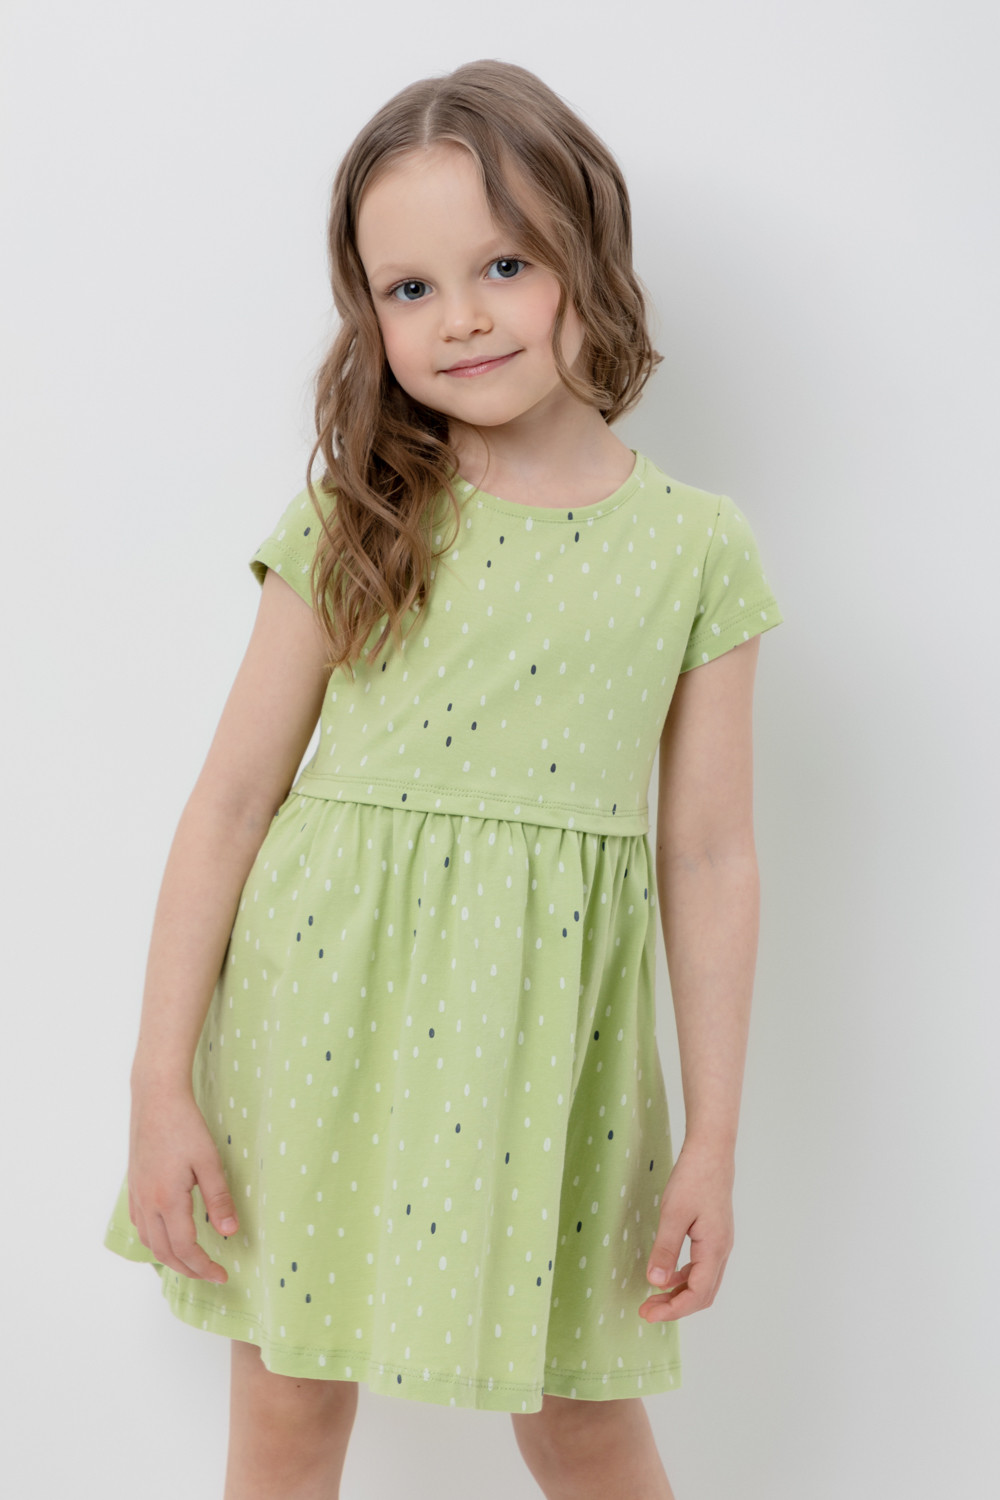 Платье детское CROCKID М 3252, сочный лайм, яркий горошек, 134